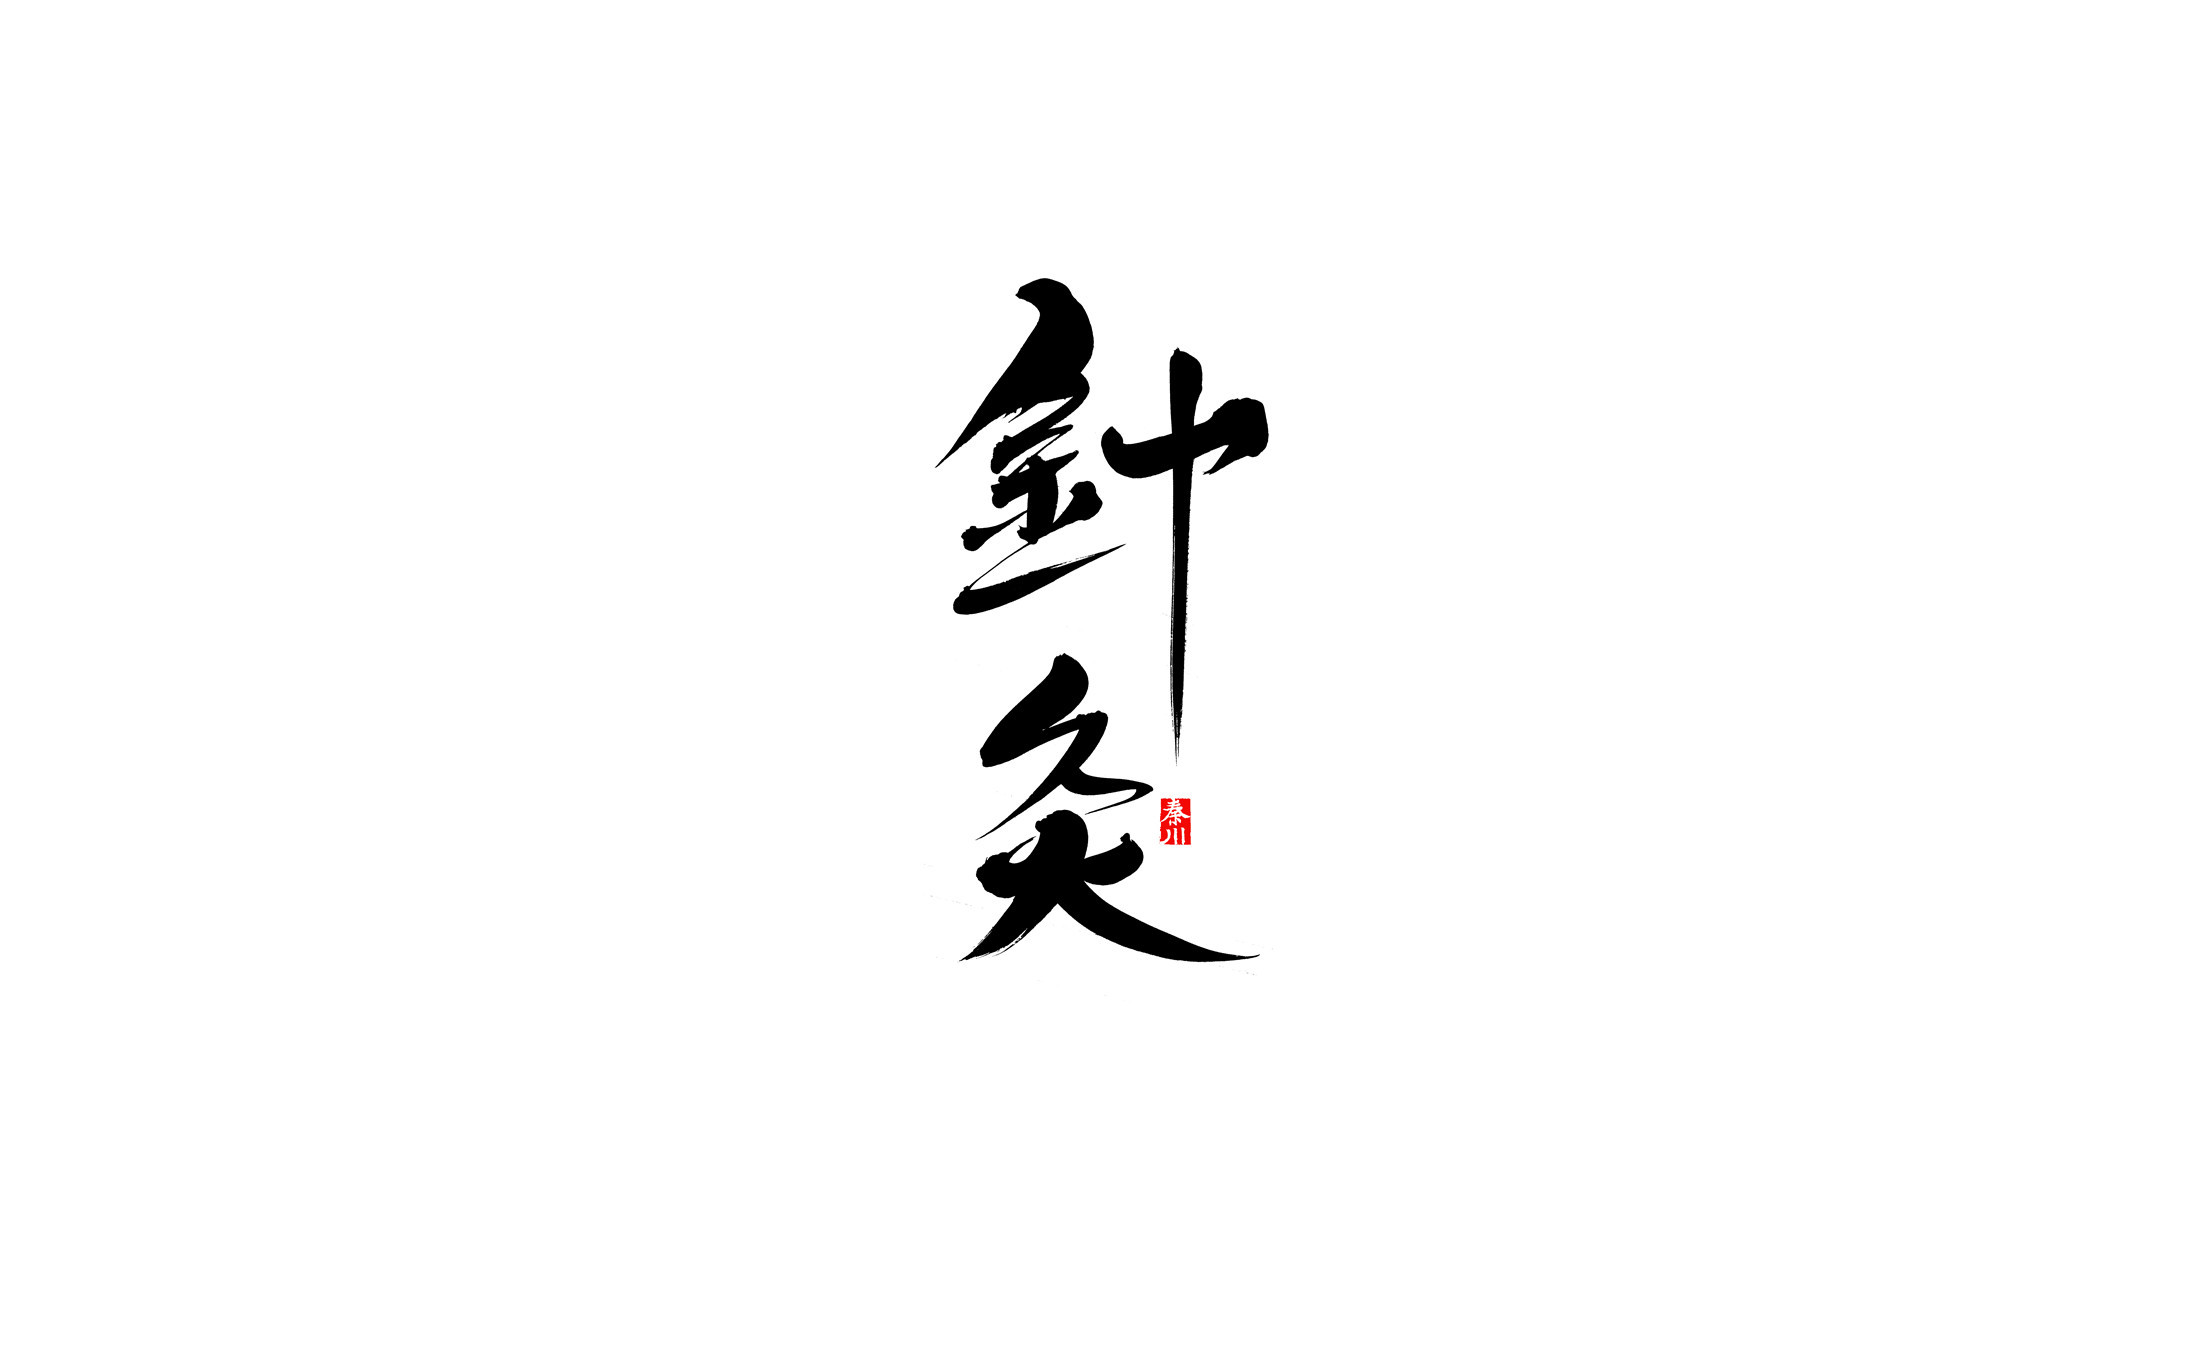   秦川书法字体 